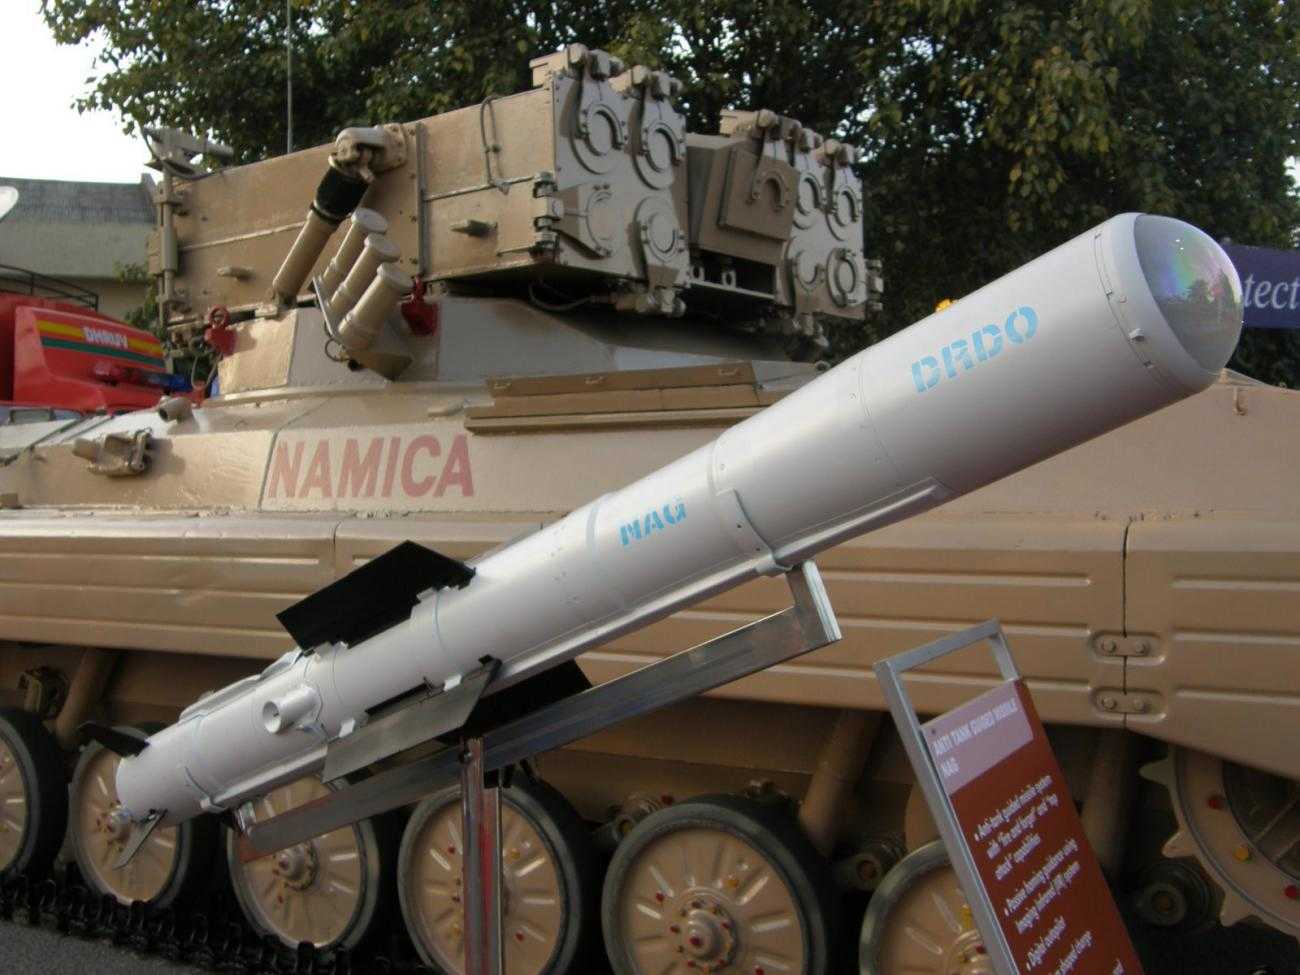 El misil antiataque Nag y la plataforma de lanzamiento (NAMICA) expuestos en la Feria Internacional de Armas Terrestres y Navales DEFEXPO-2008 en Delhi. Fuente: Ajai Shukla/Wikipedia. CC2.5